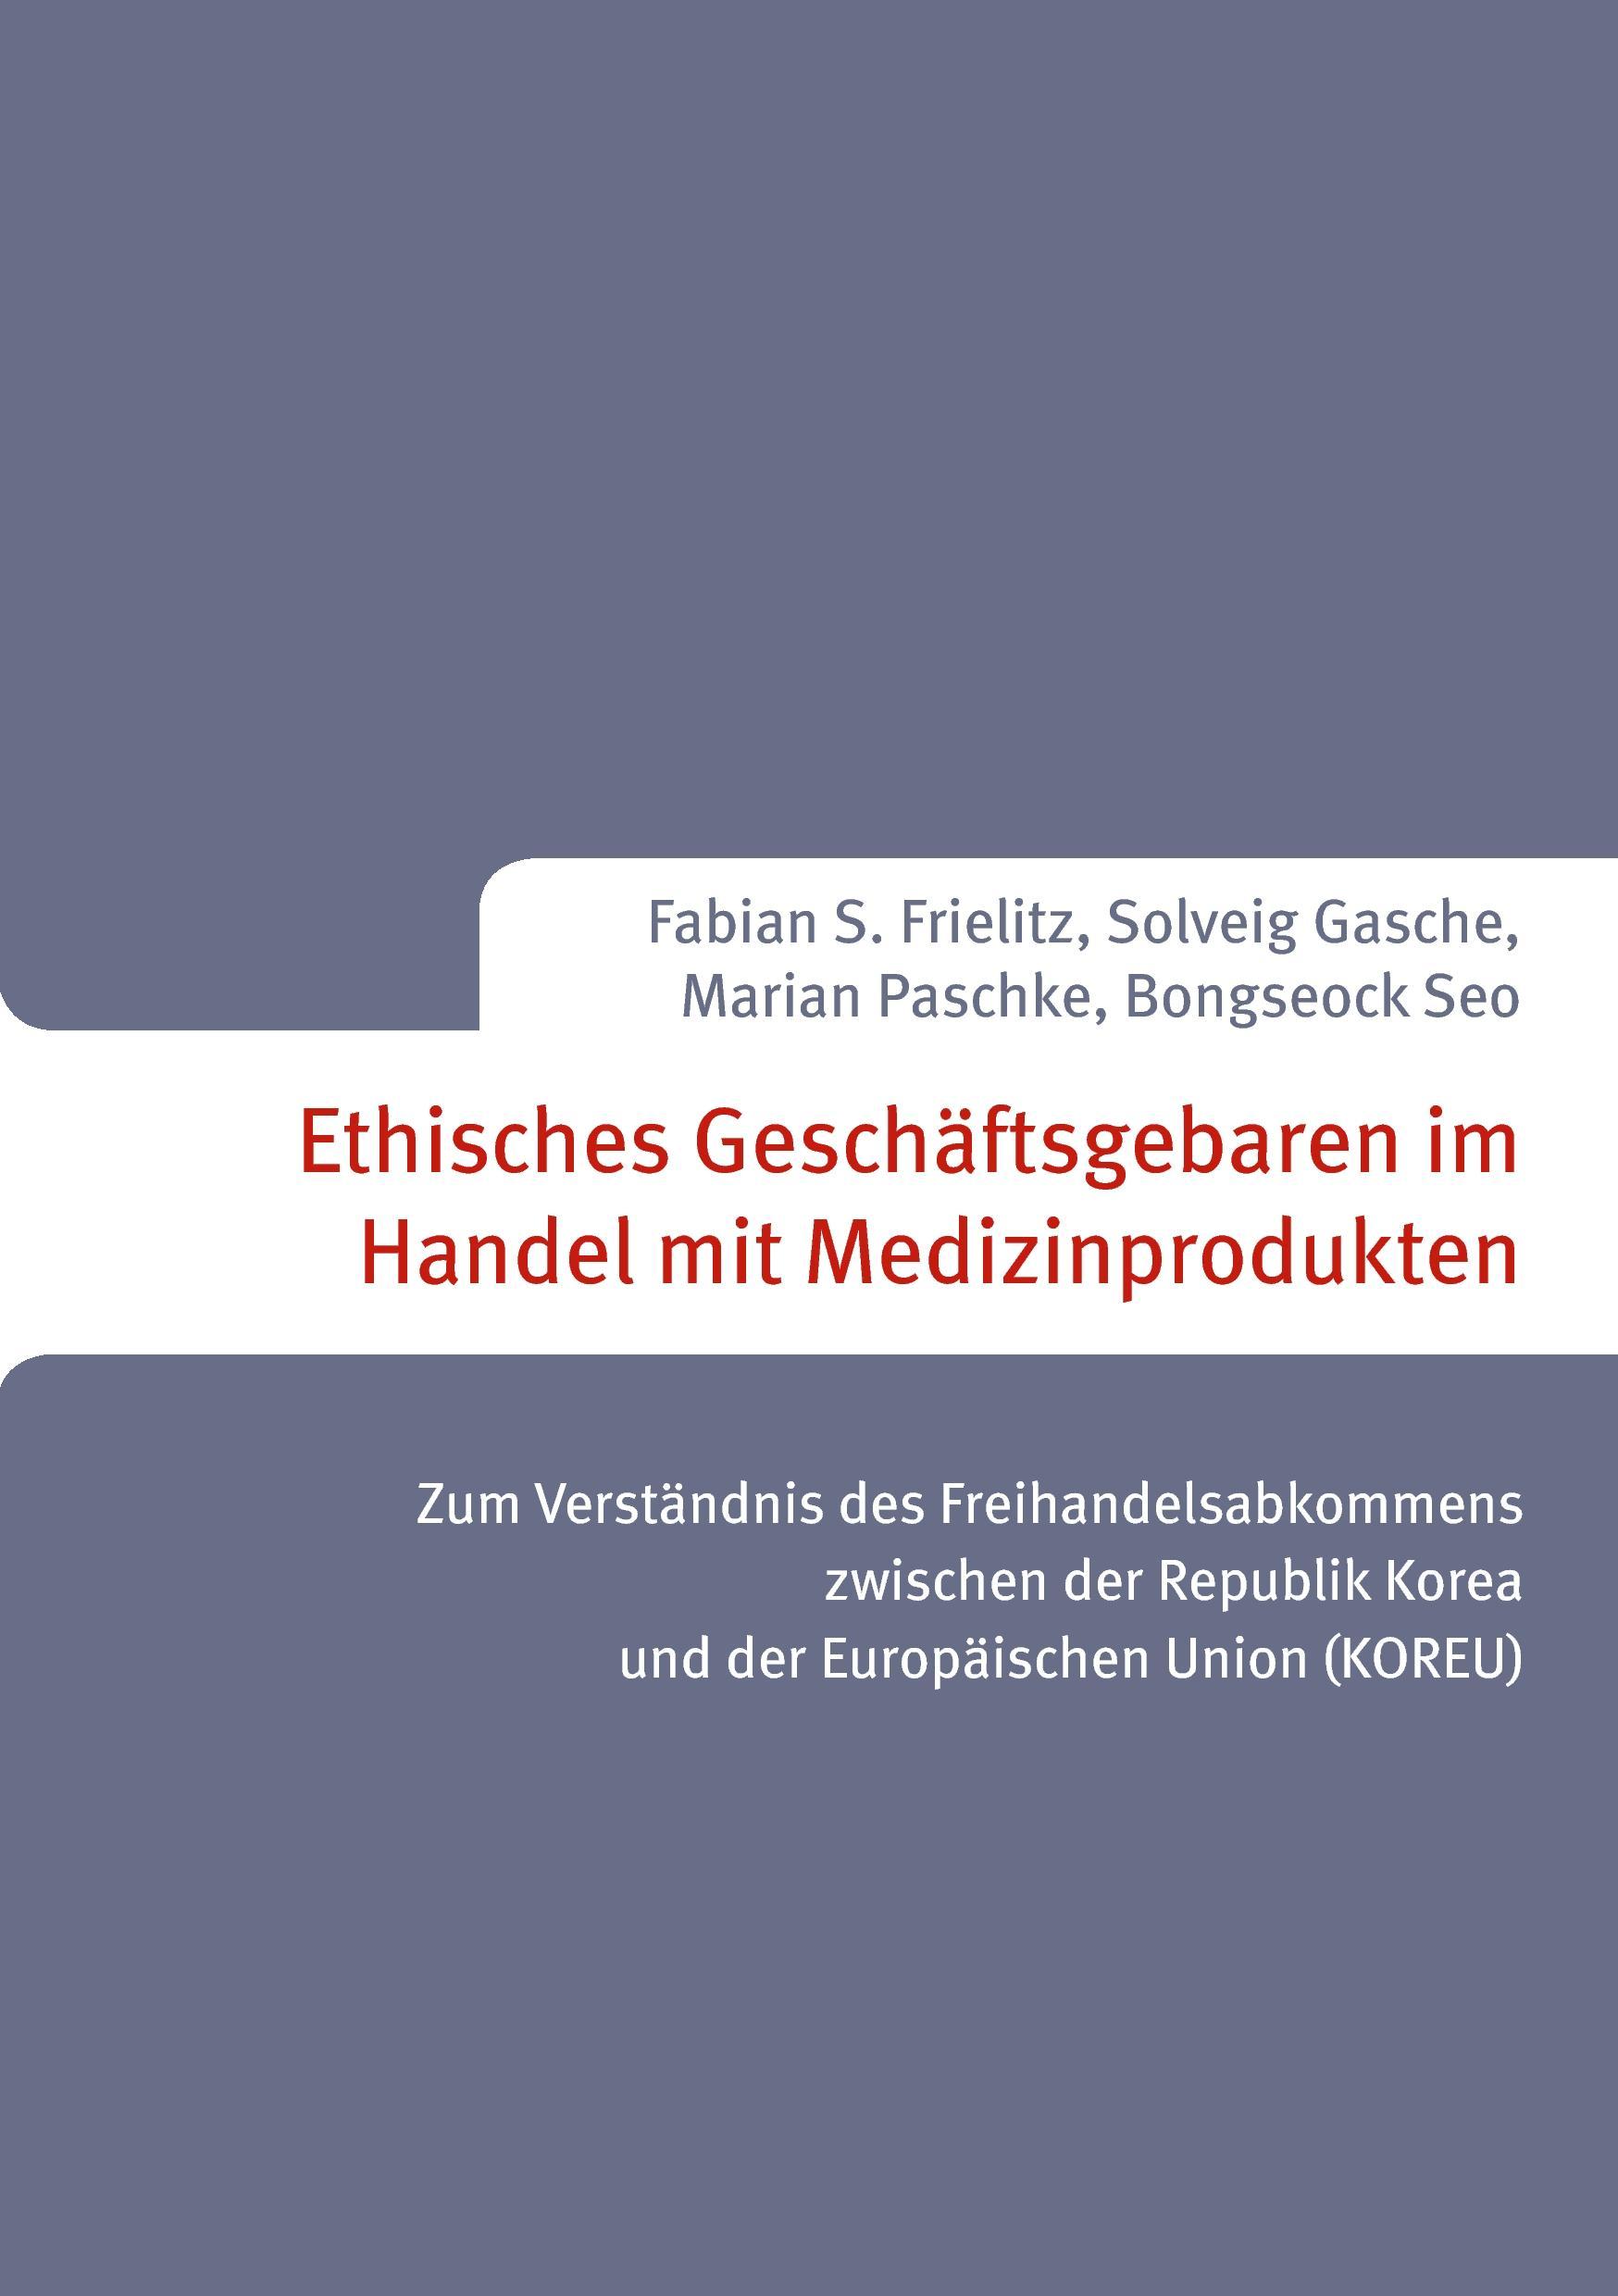 Ethisches Geschaeftsgebaren im Handel mit Medizinprodukten - Paschke, Marian|Frielitz, Fabian S.|Gasche, Solveig|Seo, Bongseock